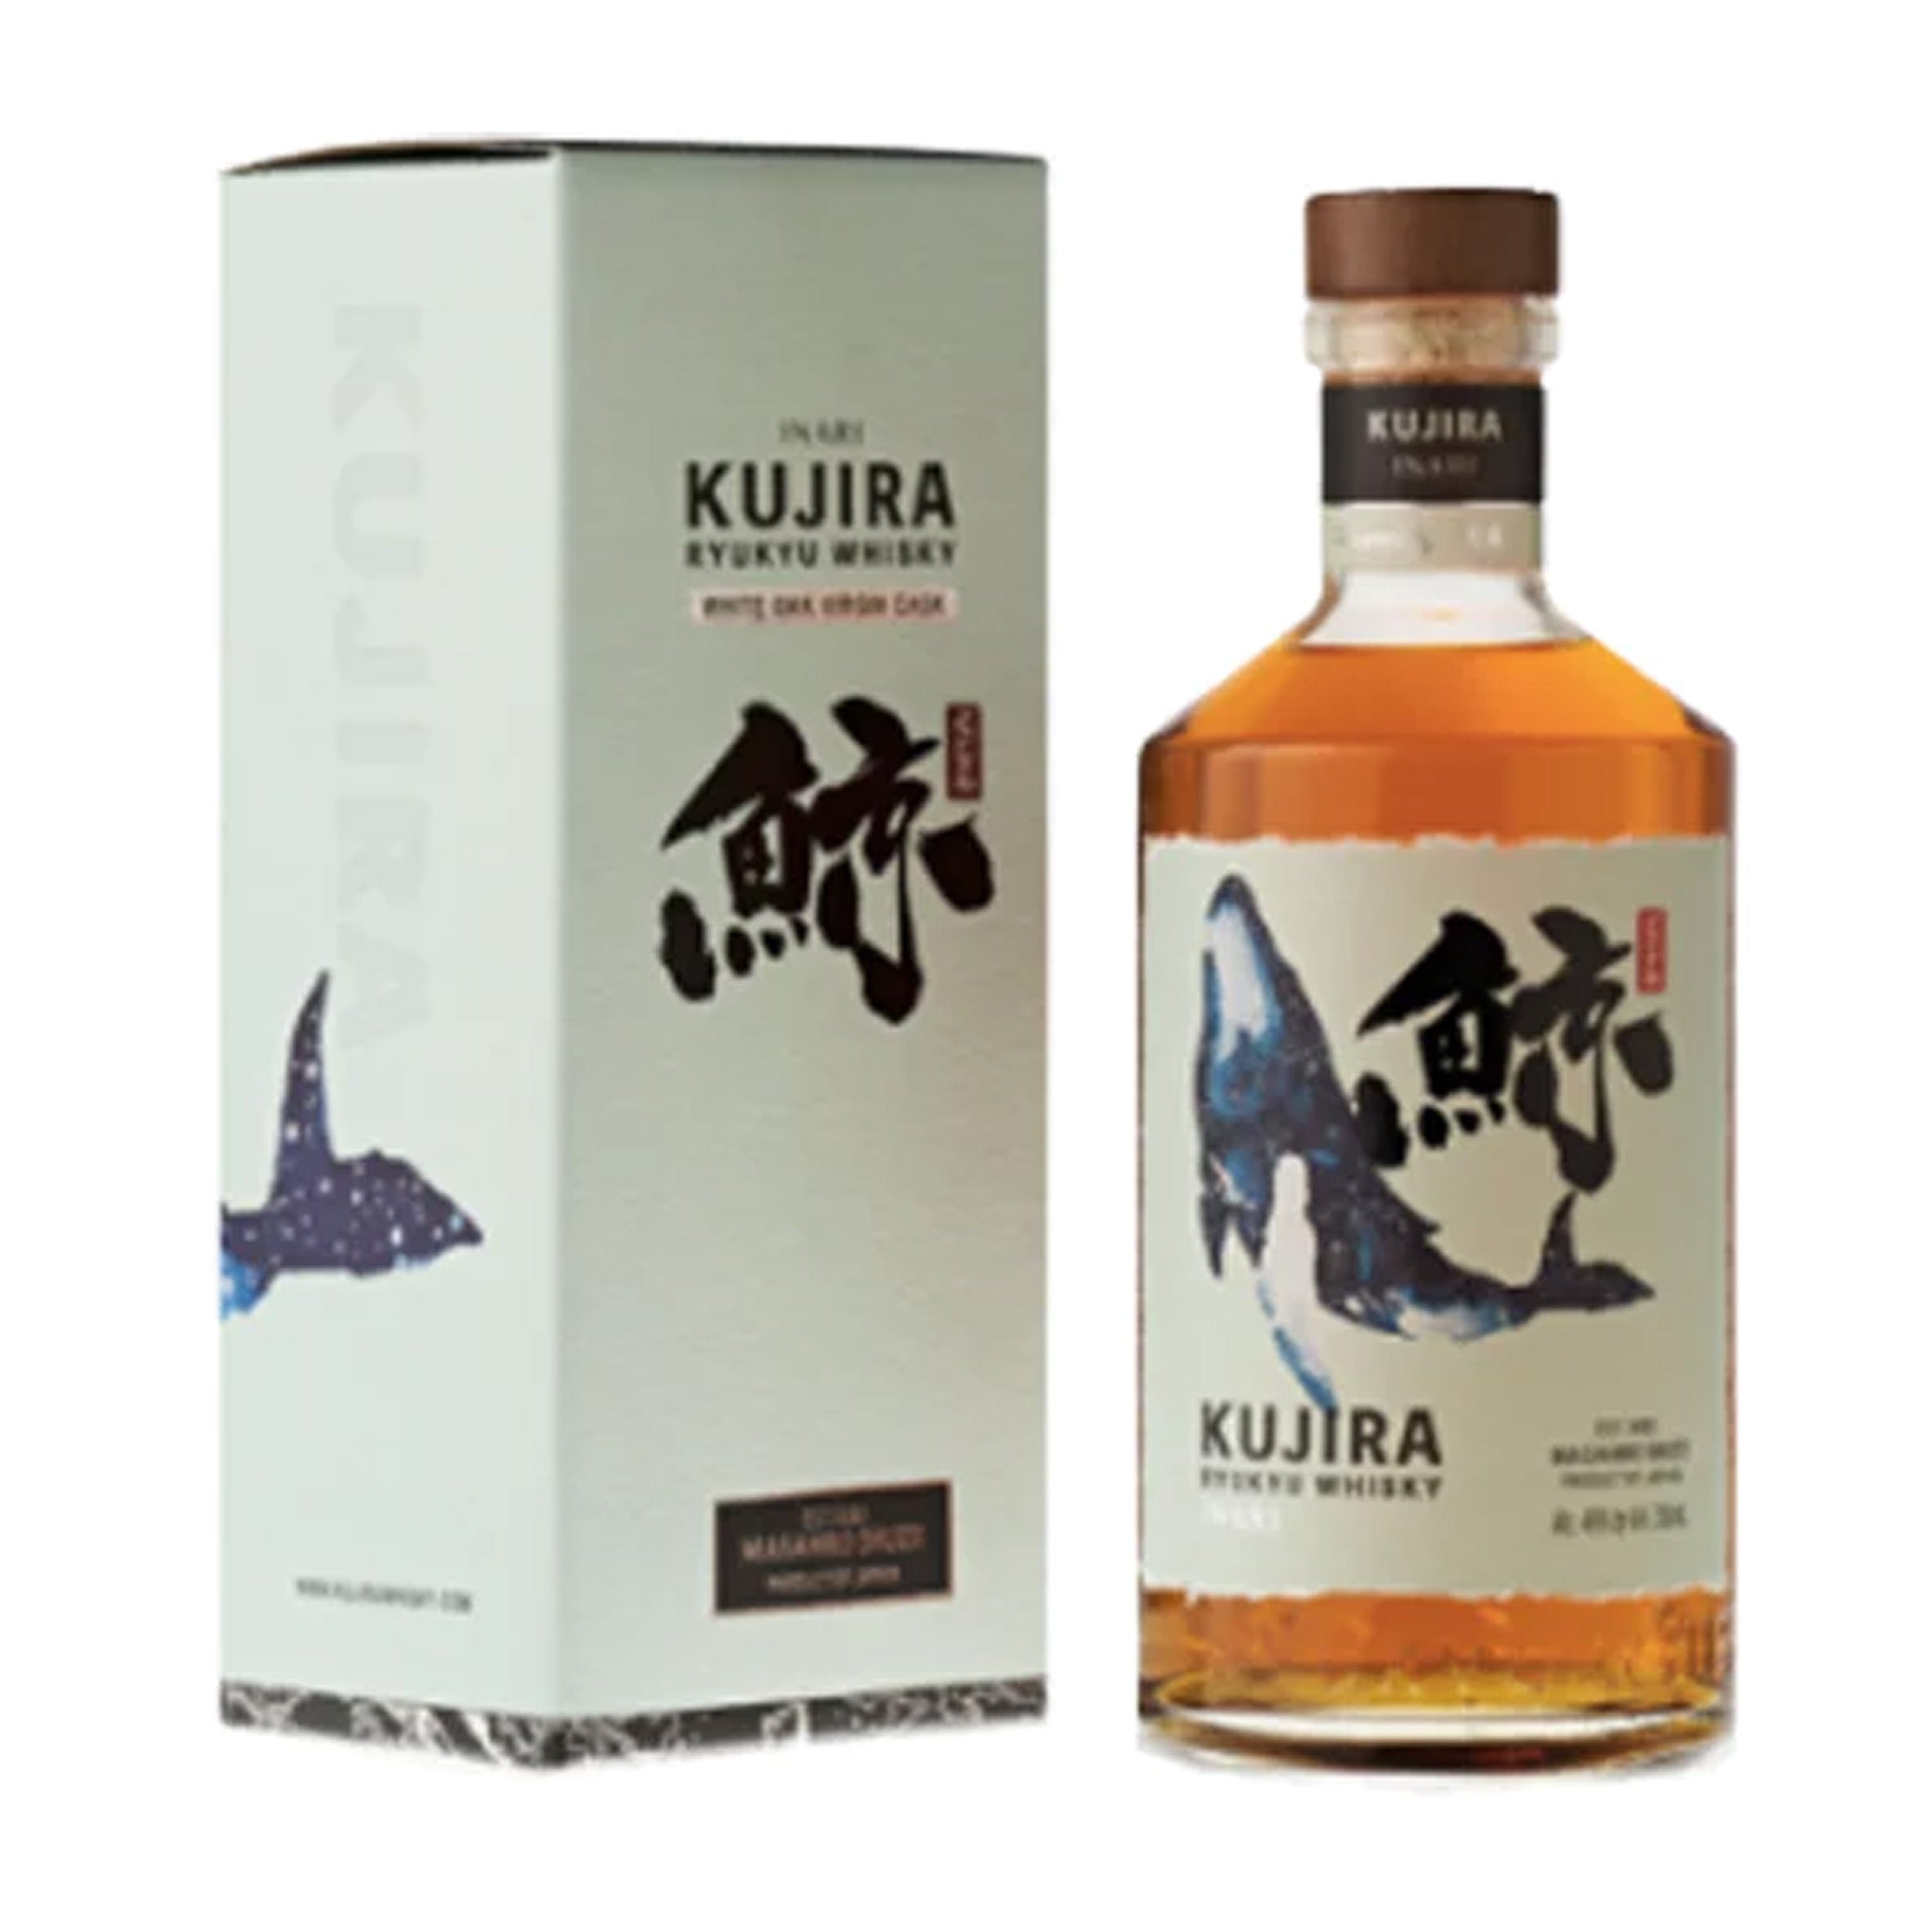 Kujira Inari Ryukyu Whiskey